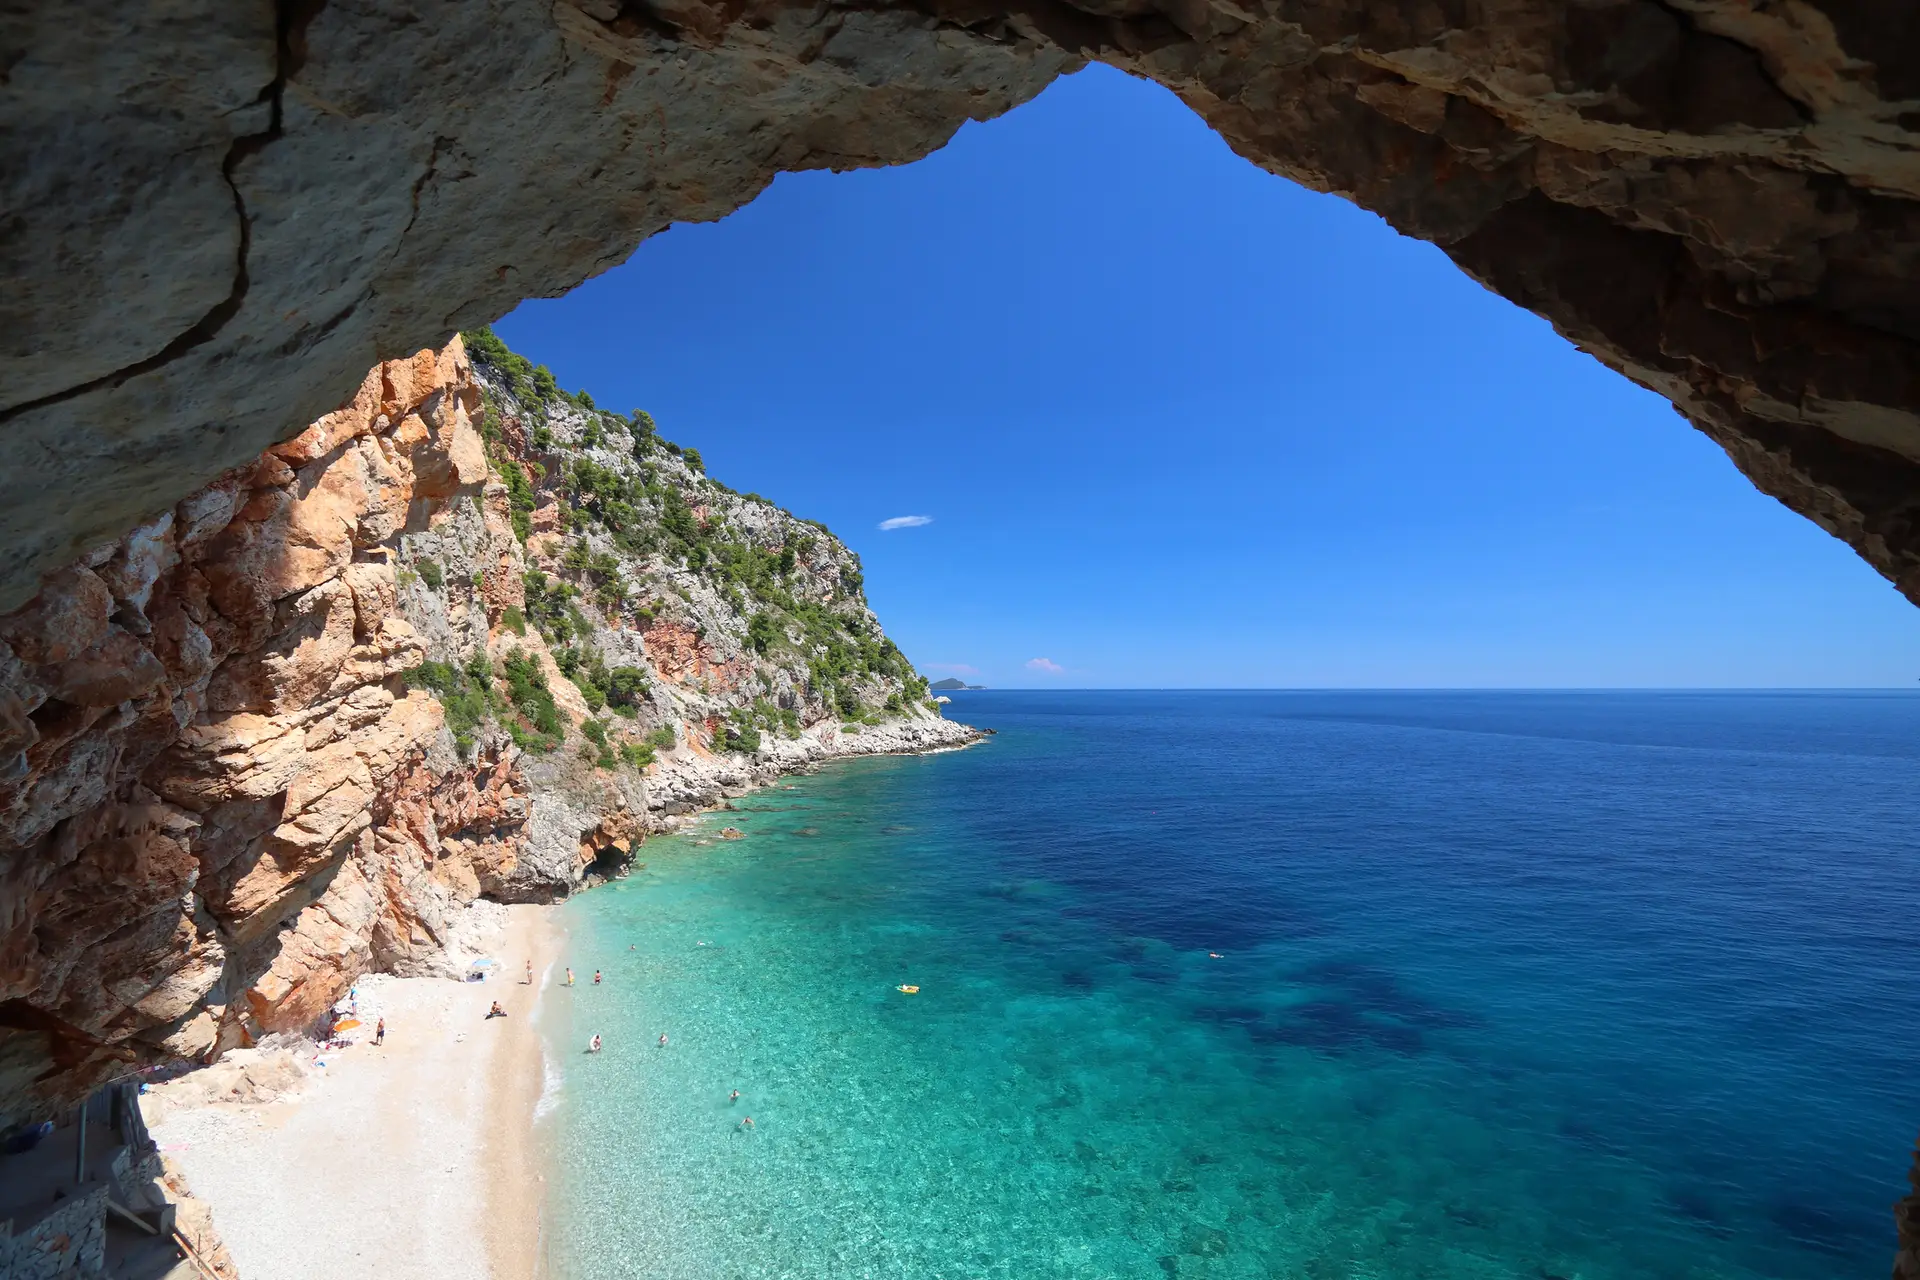 Croatia landscape. Dalmatia Adriatic coast. Pasjaca beach below cliffs in Konavle.